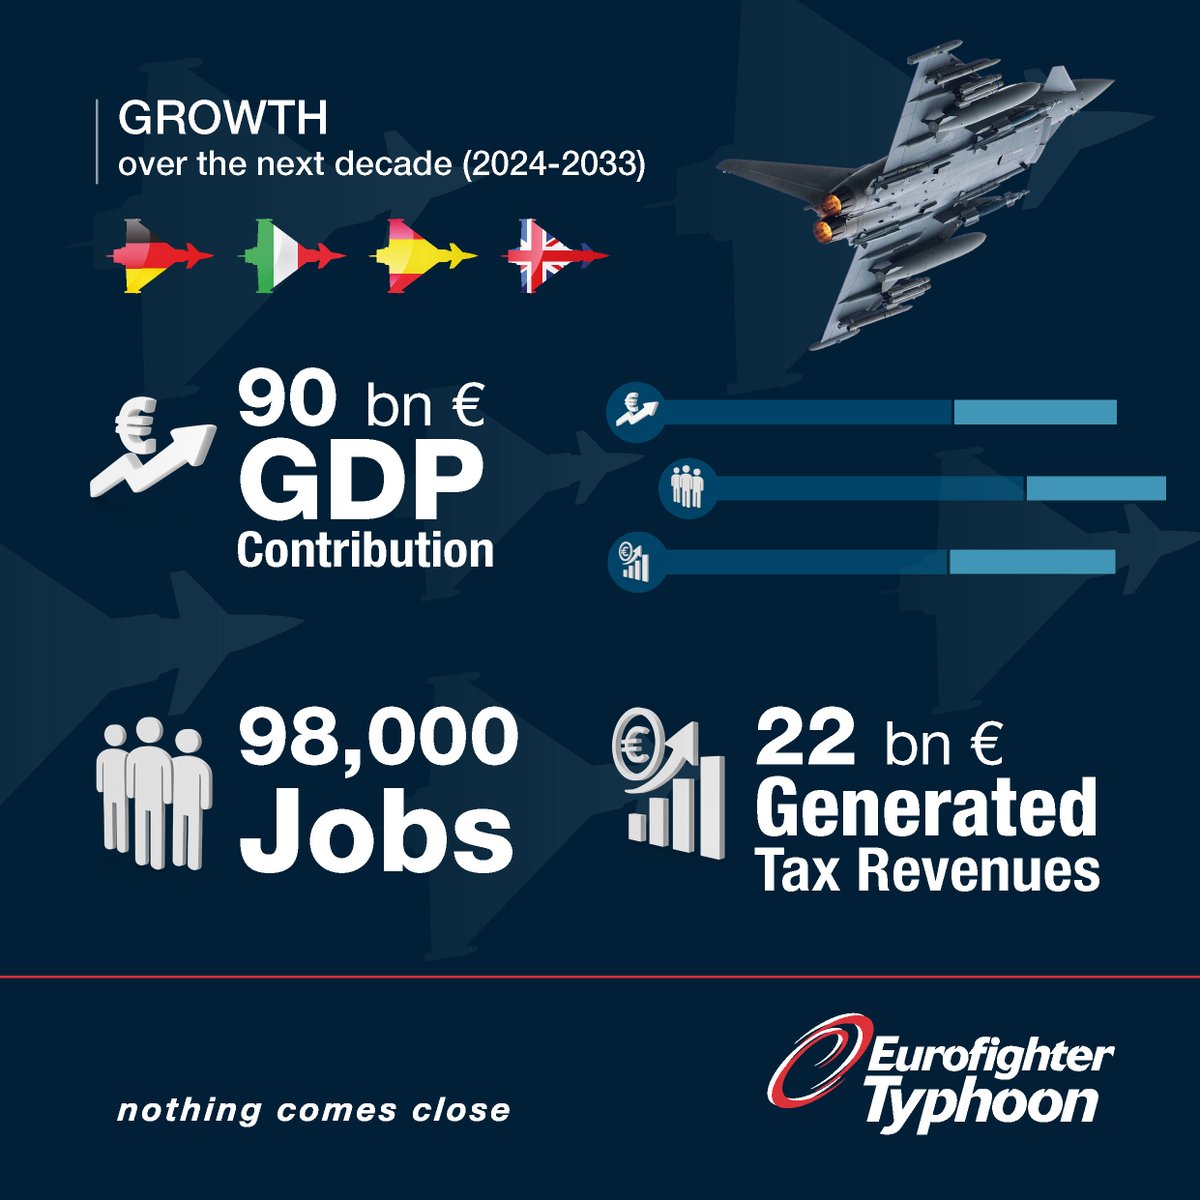 🔴#LDO_CS Un rapporto indipendente pubblicato oggi da Strategy&, parte del network #PwC, ha rivelato che il programma #Eurofighter #Typhoon ha contribuito in modo molto significativo all’economia di diversi Paesi in Europa, esaminando in dettaglio l’ampio spettro dello sviluppo,